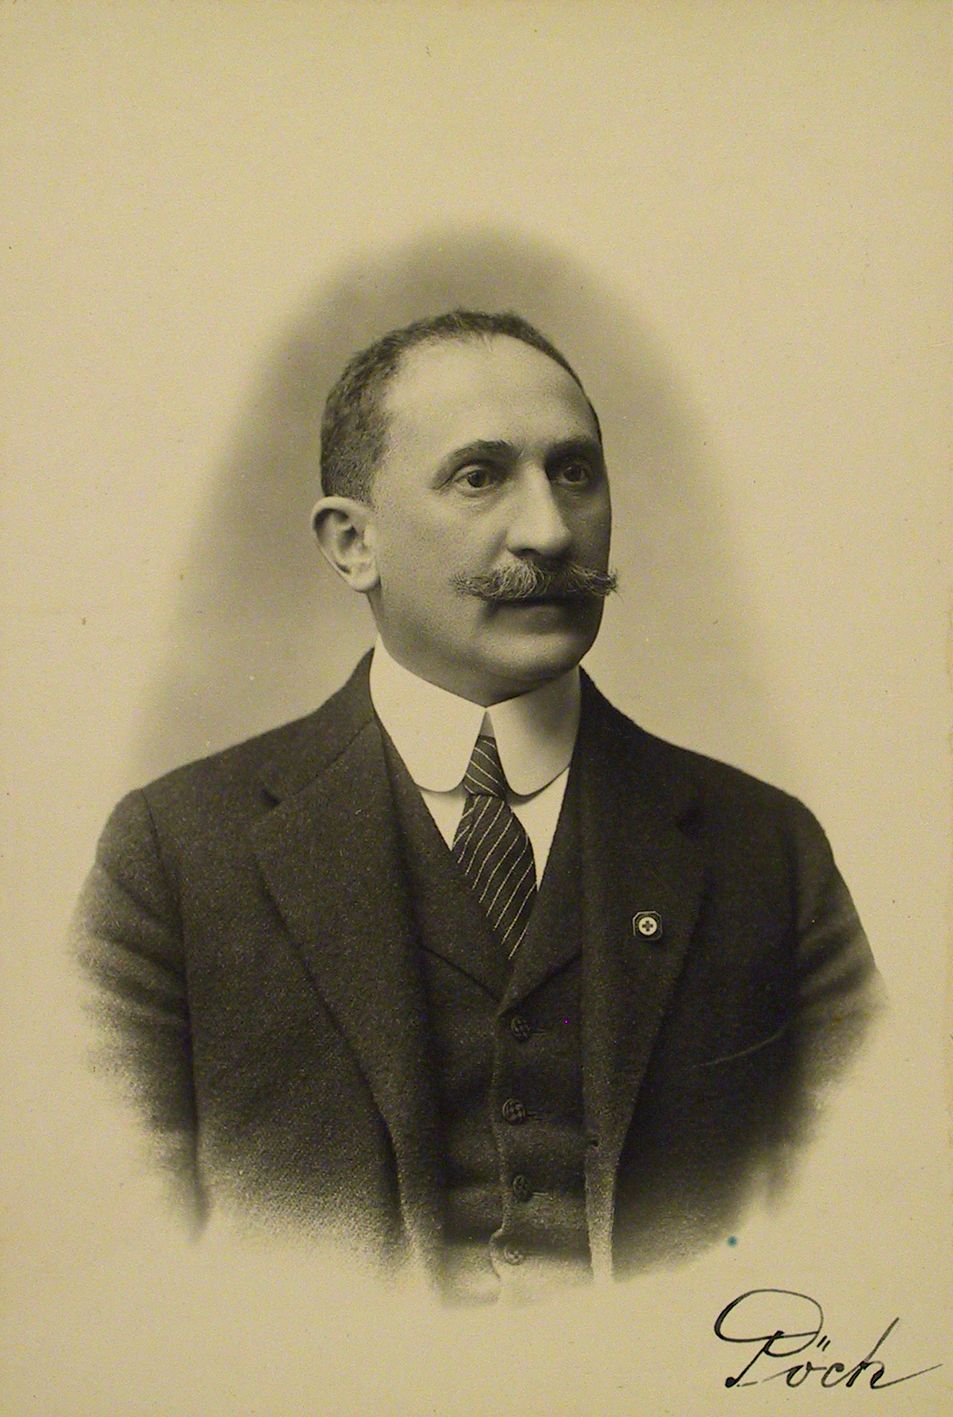   Rudolf Pöch, 1919/20, Quelle: Archiv der Universität Wien, Bildarchiv, 106.I.2580, Fotograf(in): unbekannt.